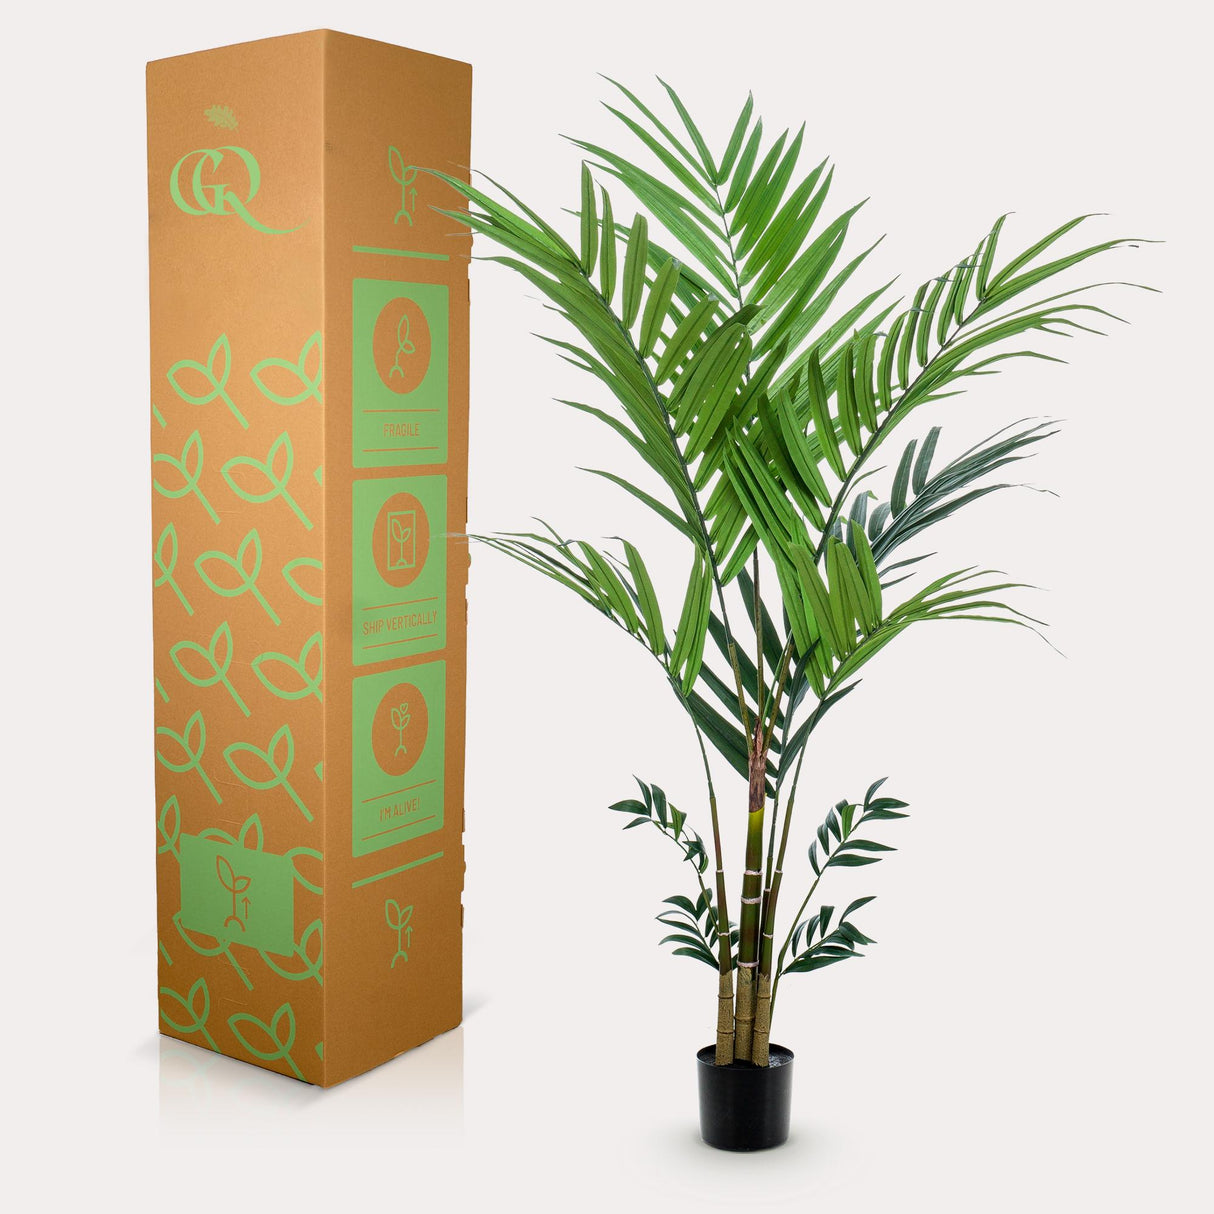 Palmier Kentia plante artificielle - h180cm, Ø15cm